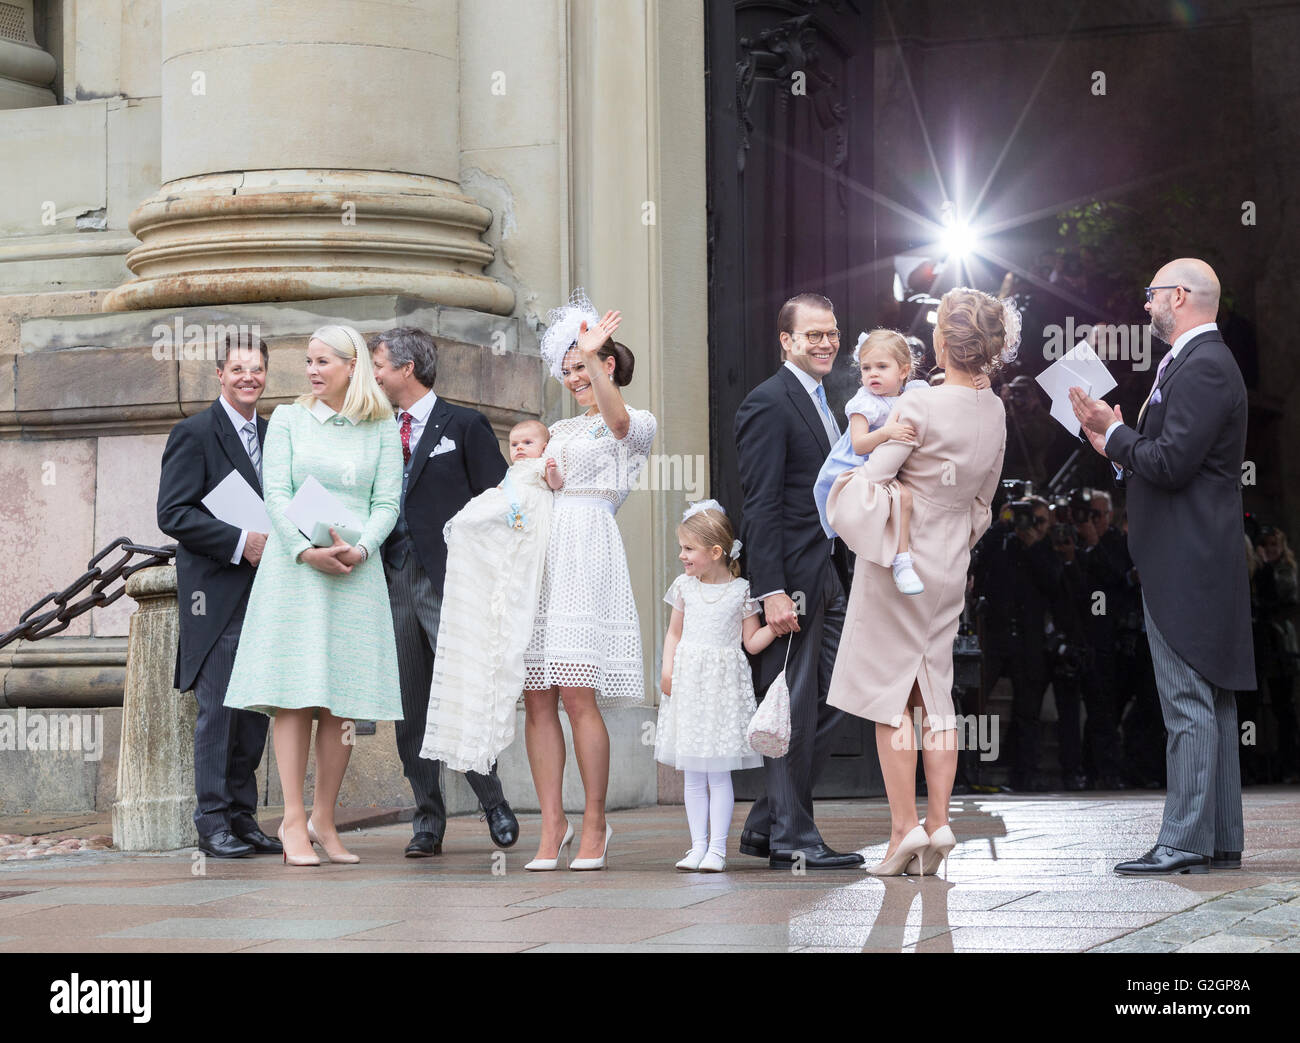 Königliche Taufe in Schweden Mai 2016 – Prinz Oscar von Schweden. Der engsten Familie und Paten gesehen Stockfoto